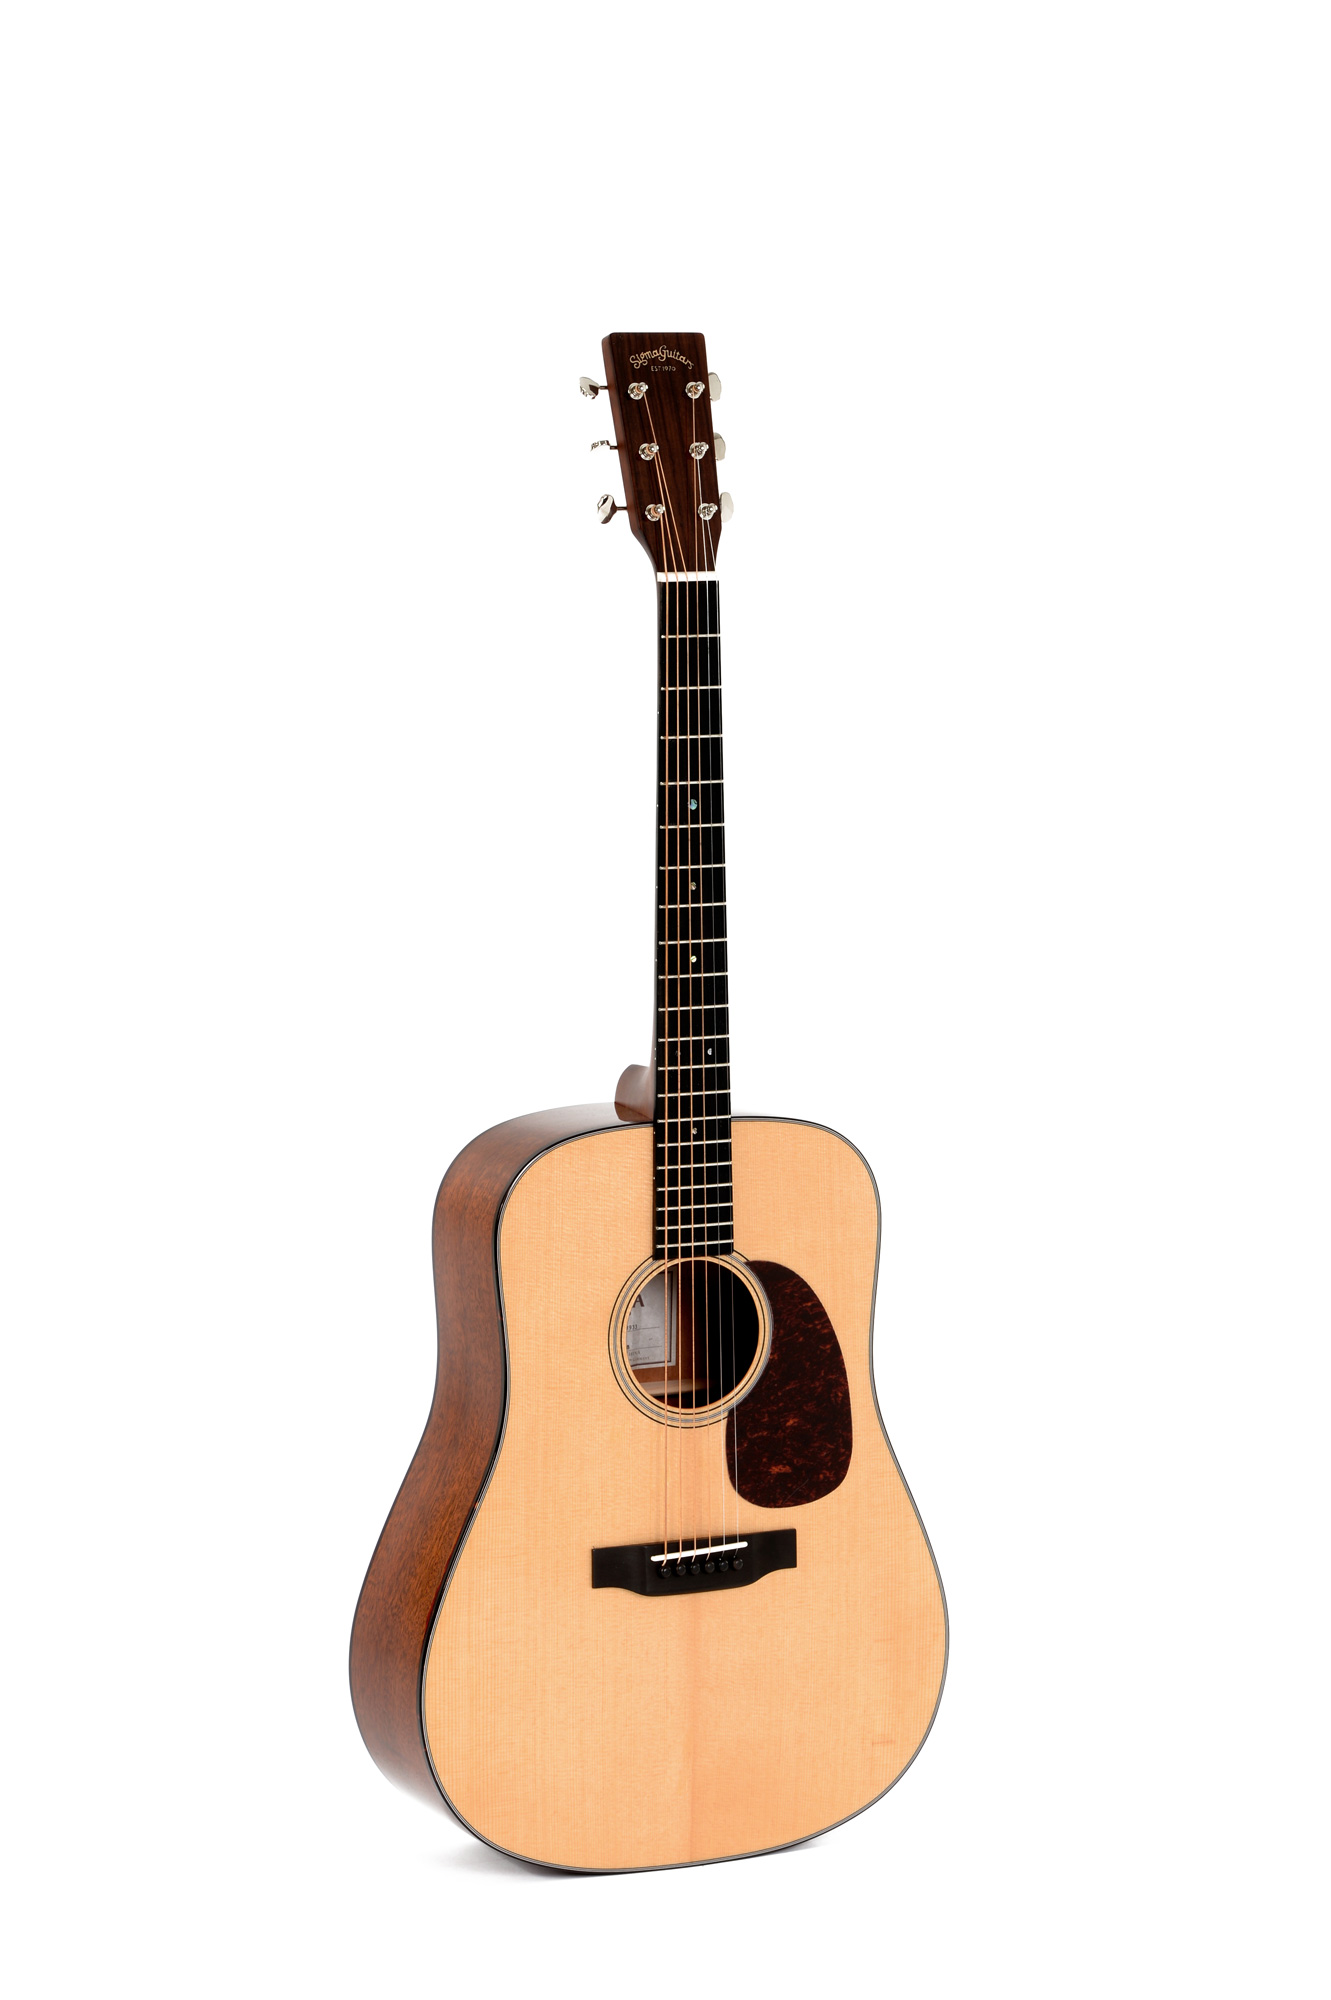 Акустические гитары Sigma SDM-18 гитара акустическая дерево 97см с вырезом